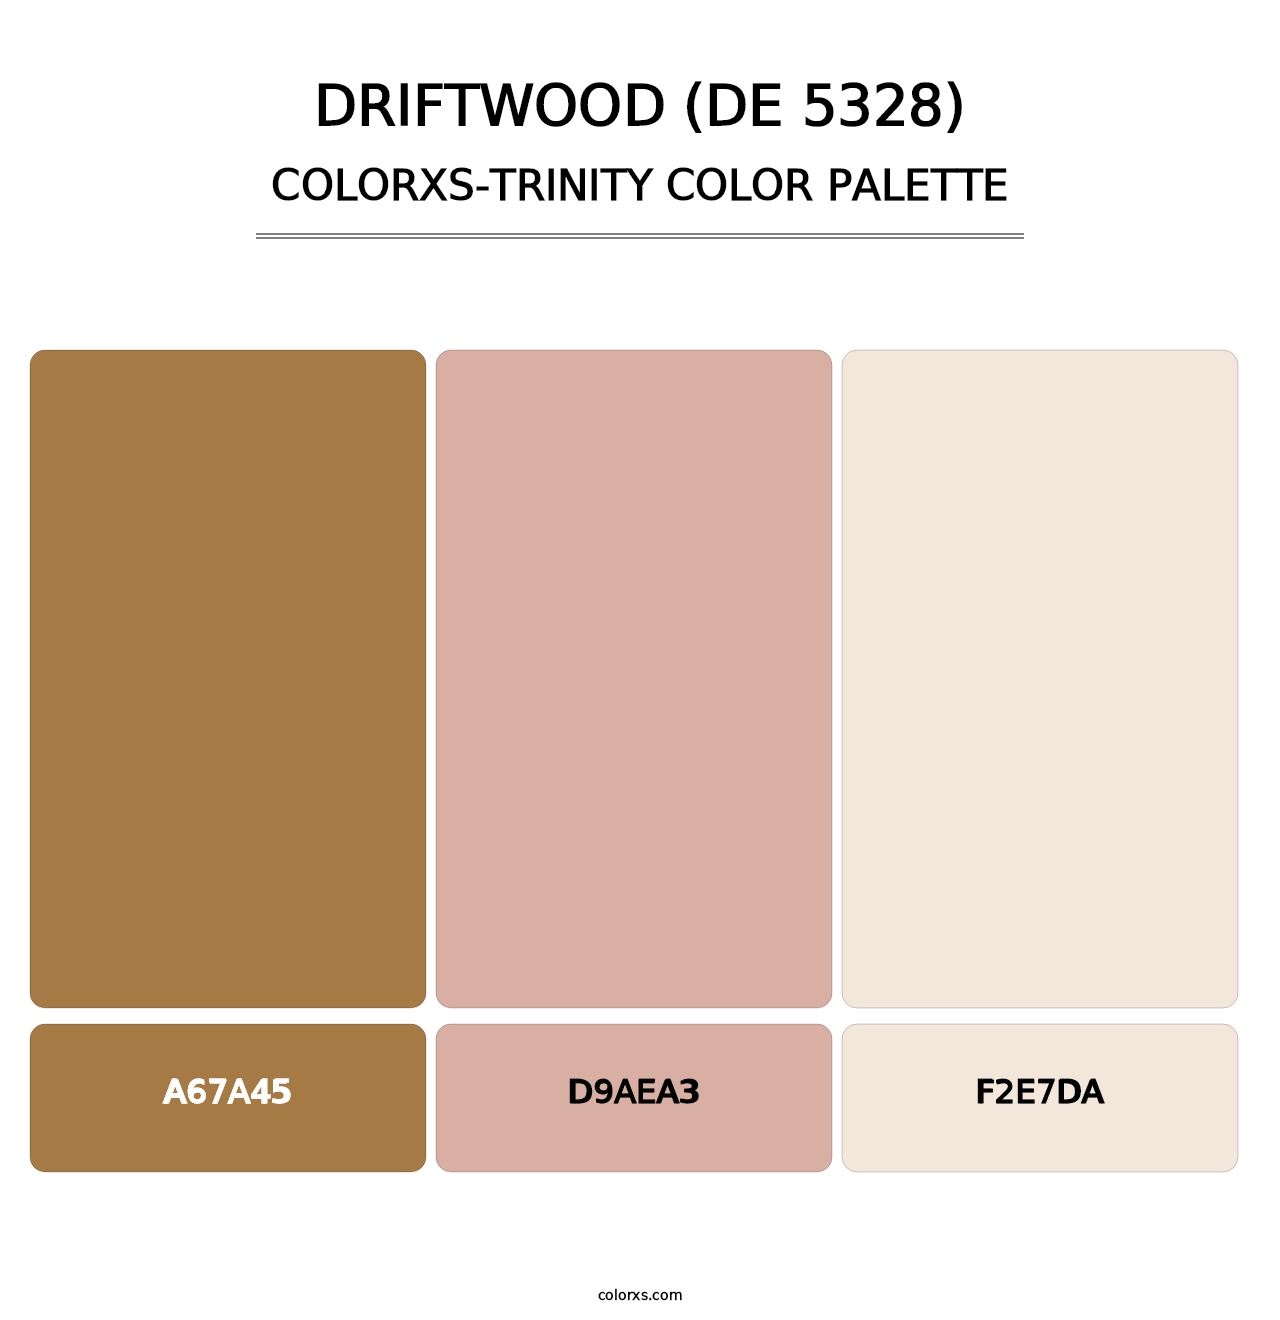 Driftwood (DE 5328) - Colorxs Trinity Palette